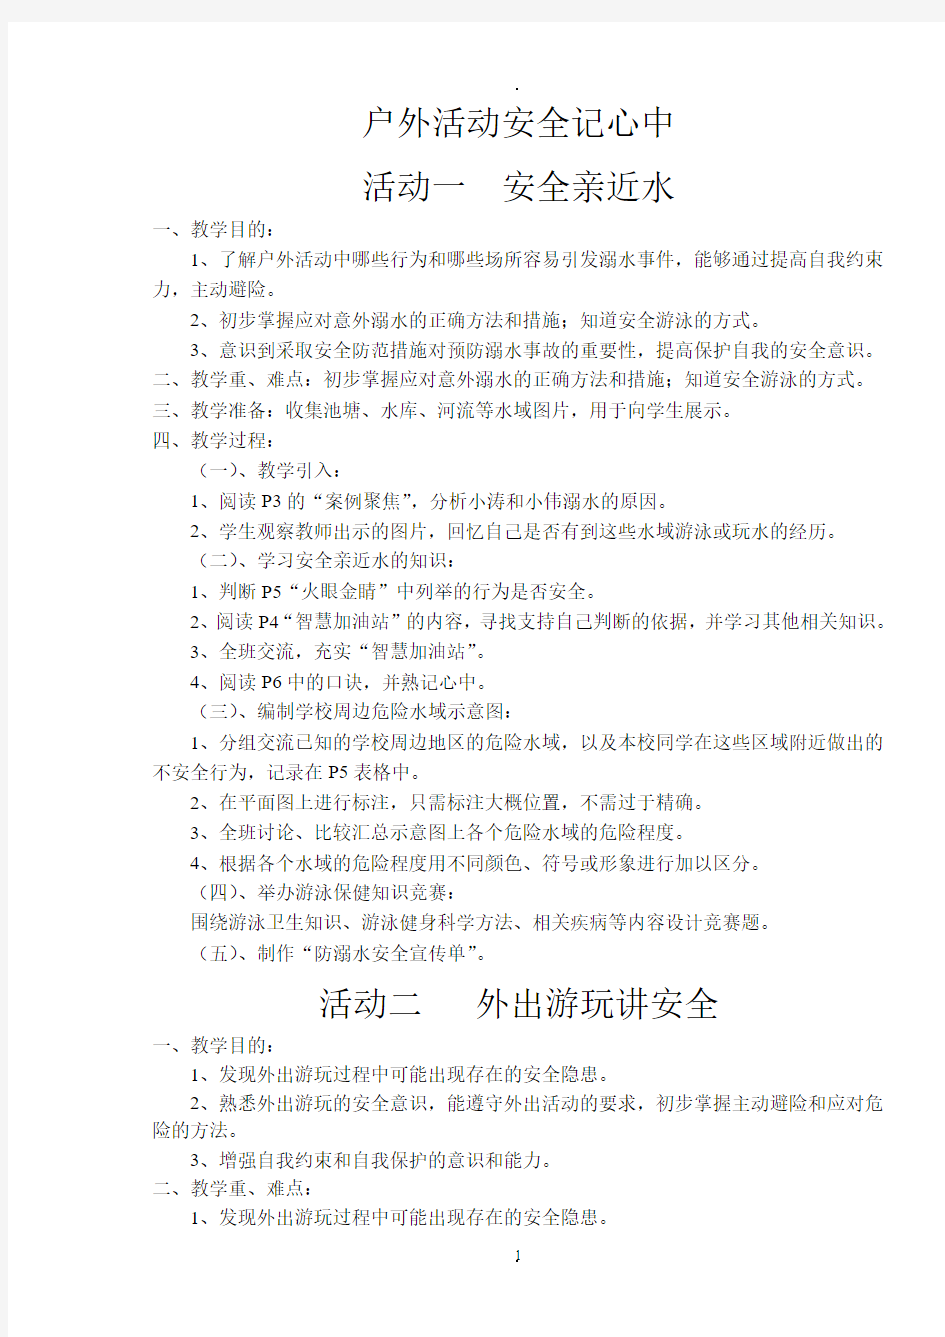 四年级下册综合实践活动教案(上海科技教育出版社)51019